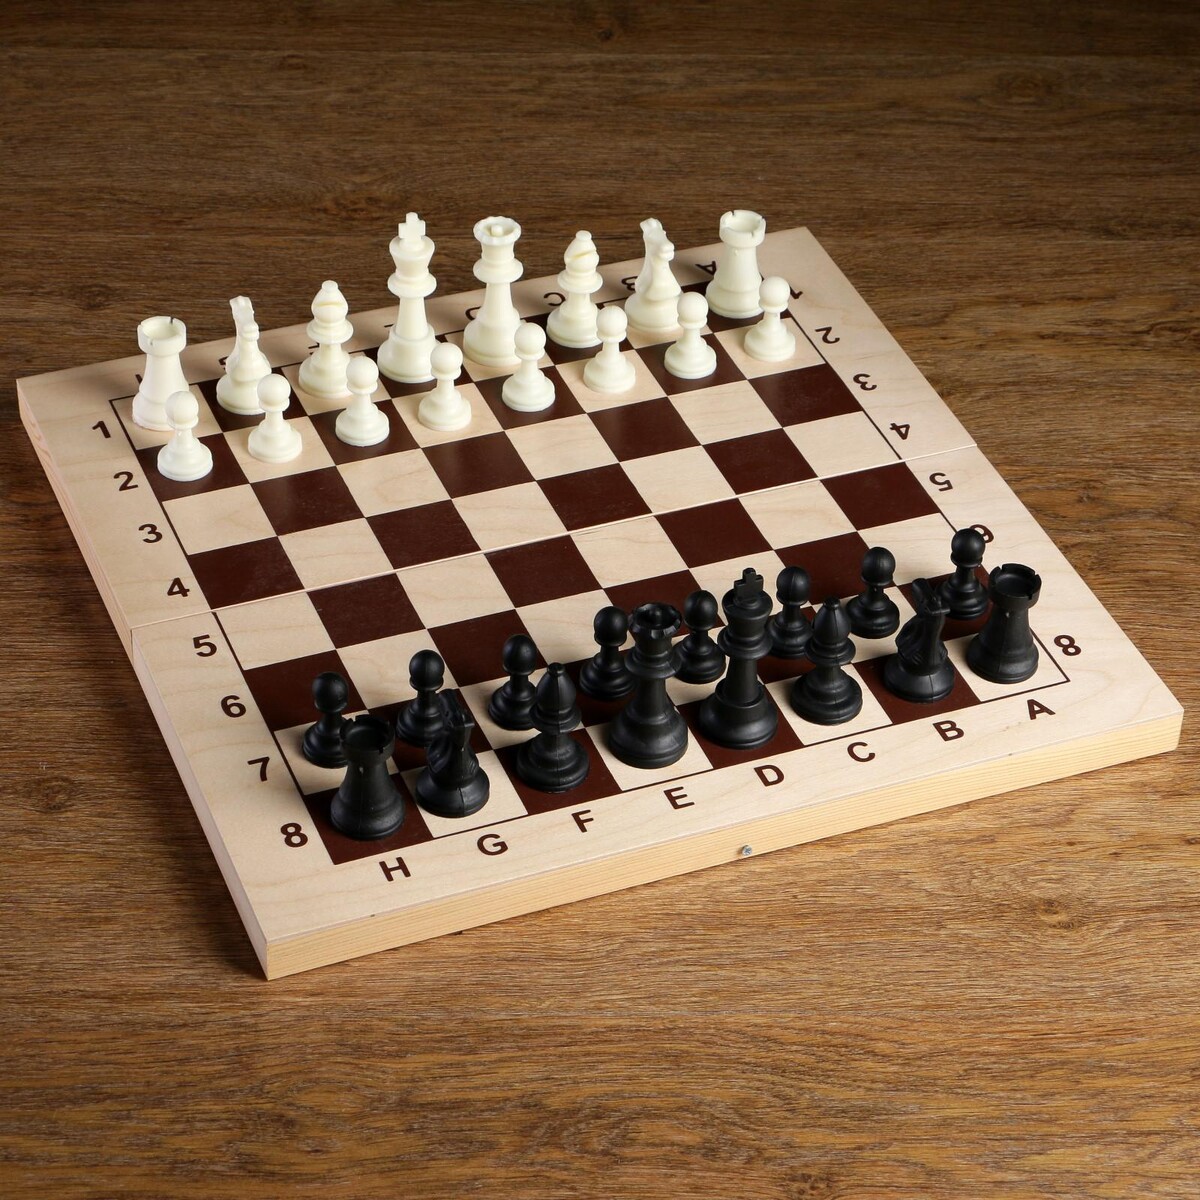 Шахматные фигуры, пластик, король h-9 см, пешка h-4.1 см шахматные фигуры пластик король h 4 2 см пешка h 2 см